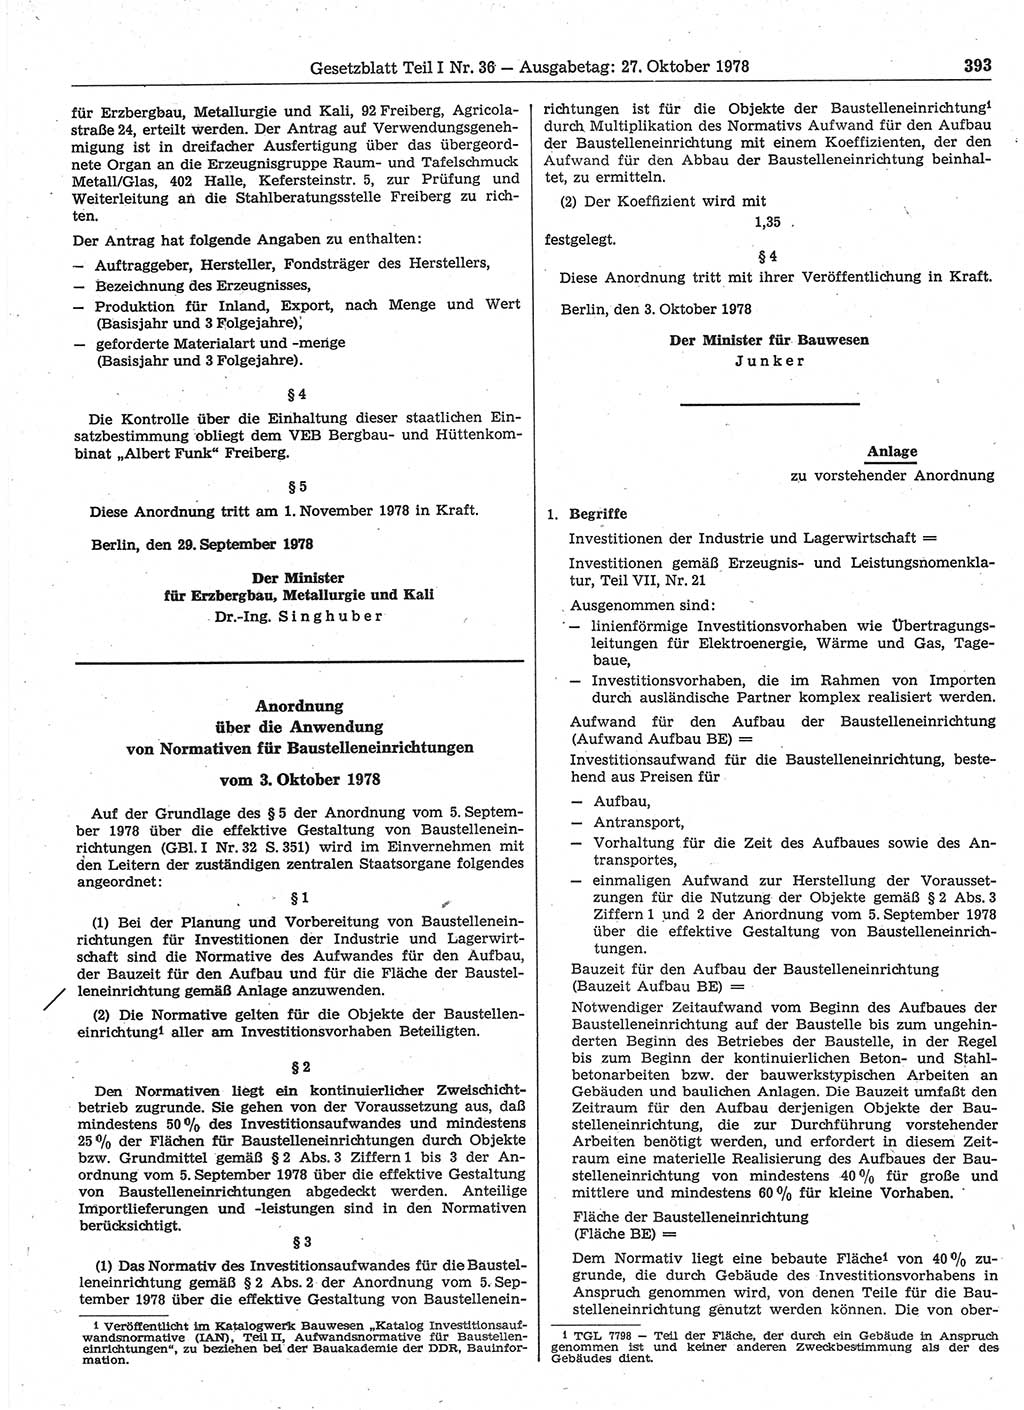 Gesetzblatt (GBl.) der Deutschen Demokratischen Republik (DDR) Teil Ⅰ 1978, Seite 393 (GBl. DDR Ⅰ 1978, S. 393)